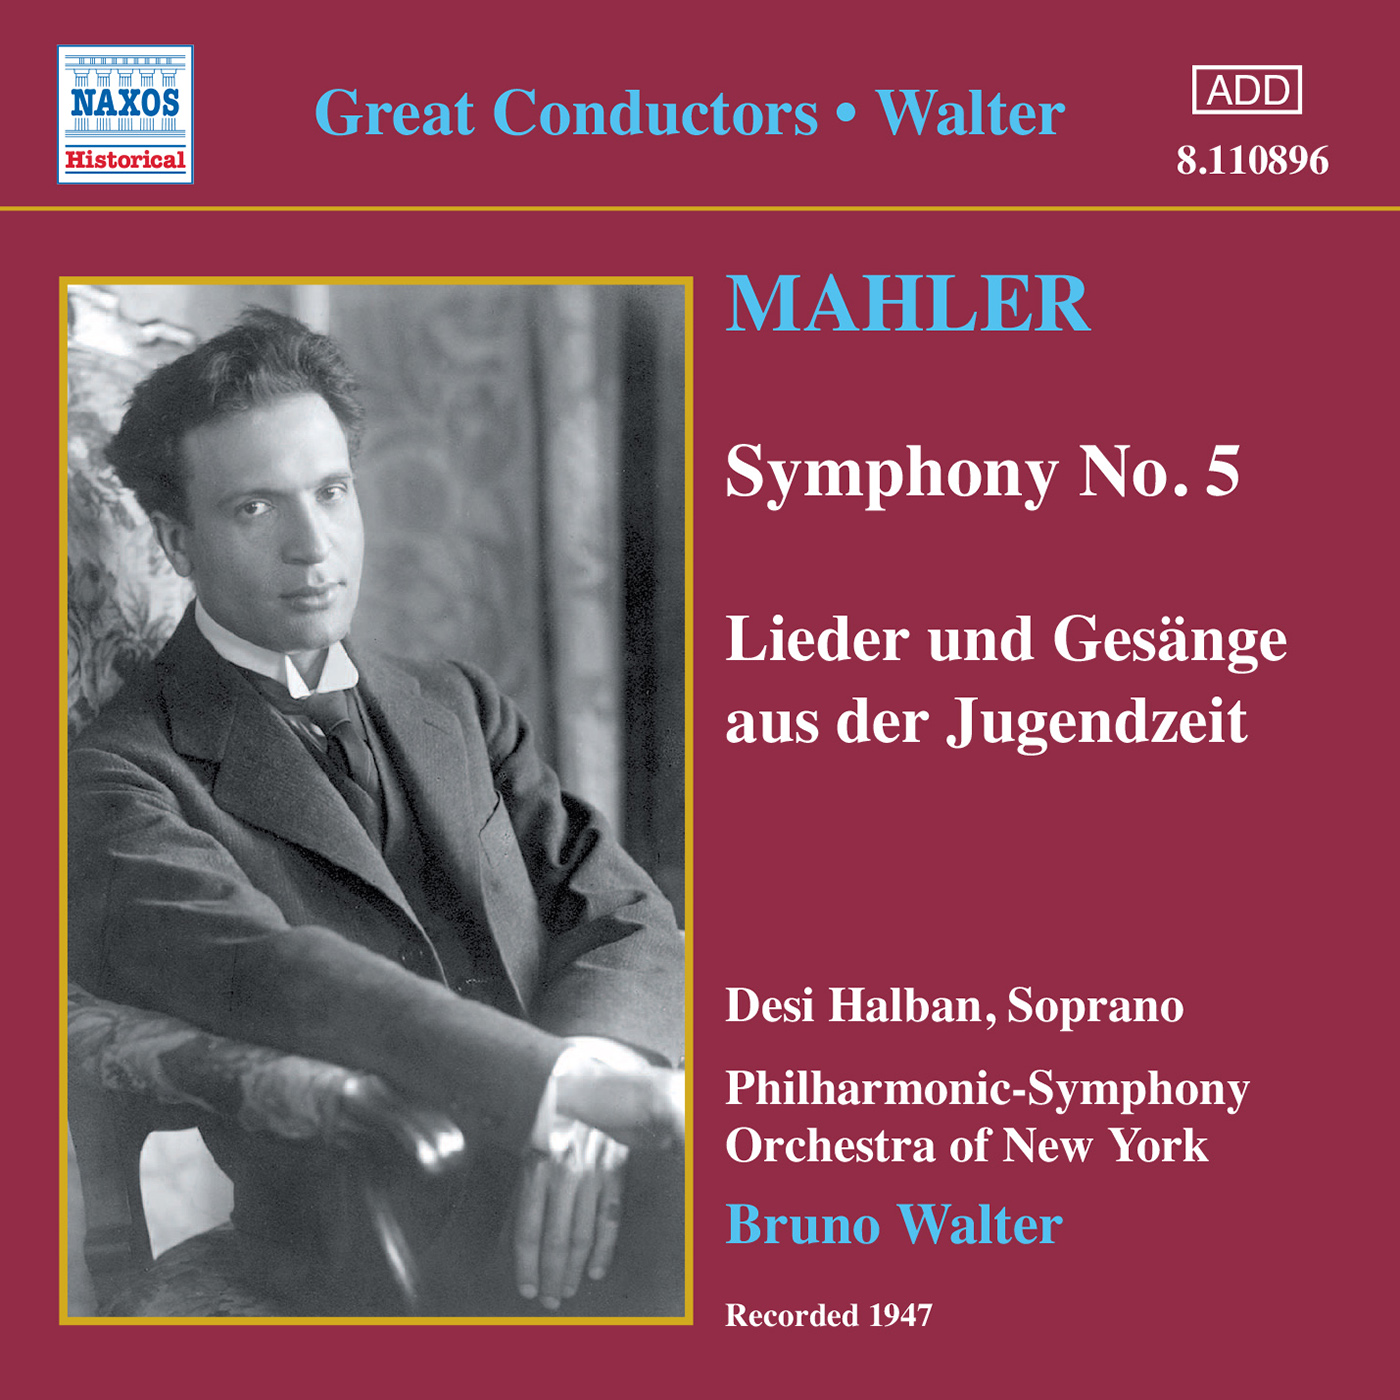 MAHLER: Symphony No. 5 / Lieder und Gesange aus der Jugendzeit (Walter) (1947)